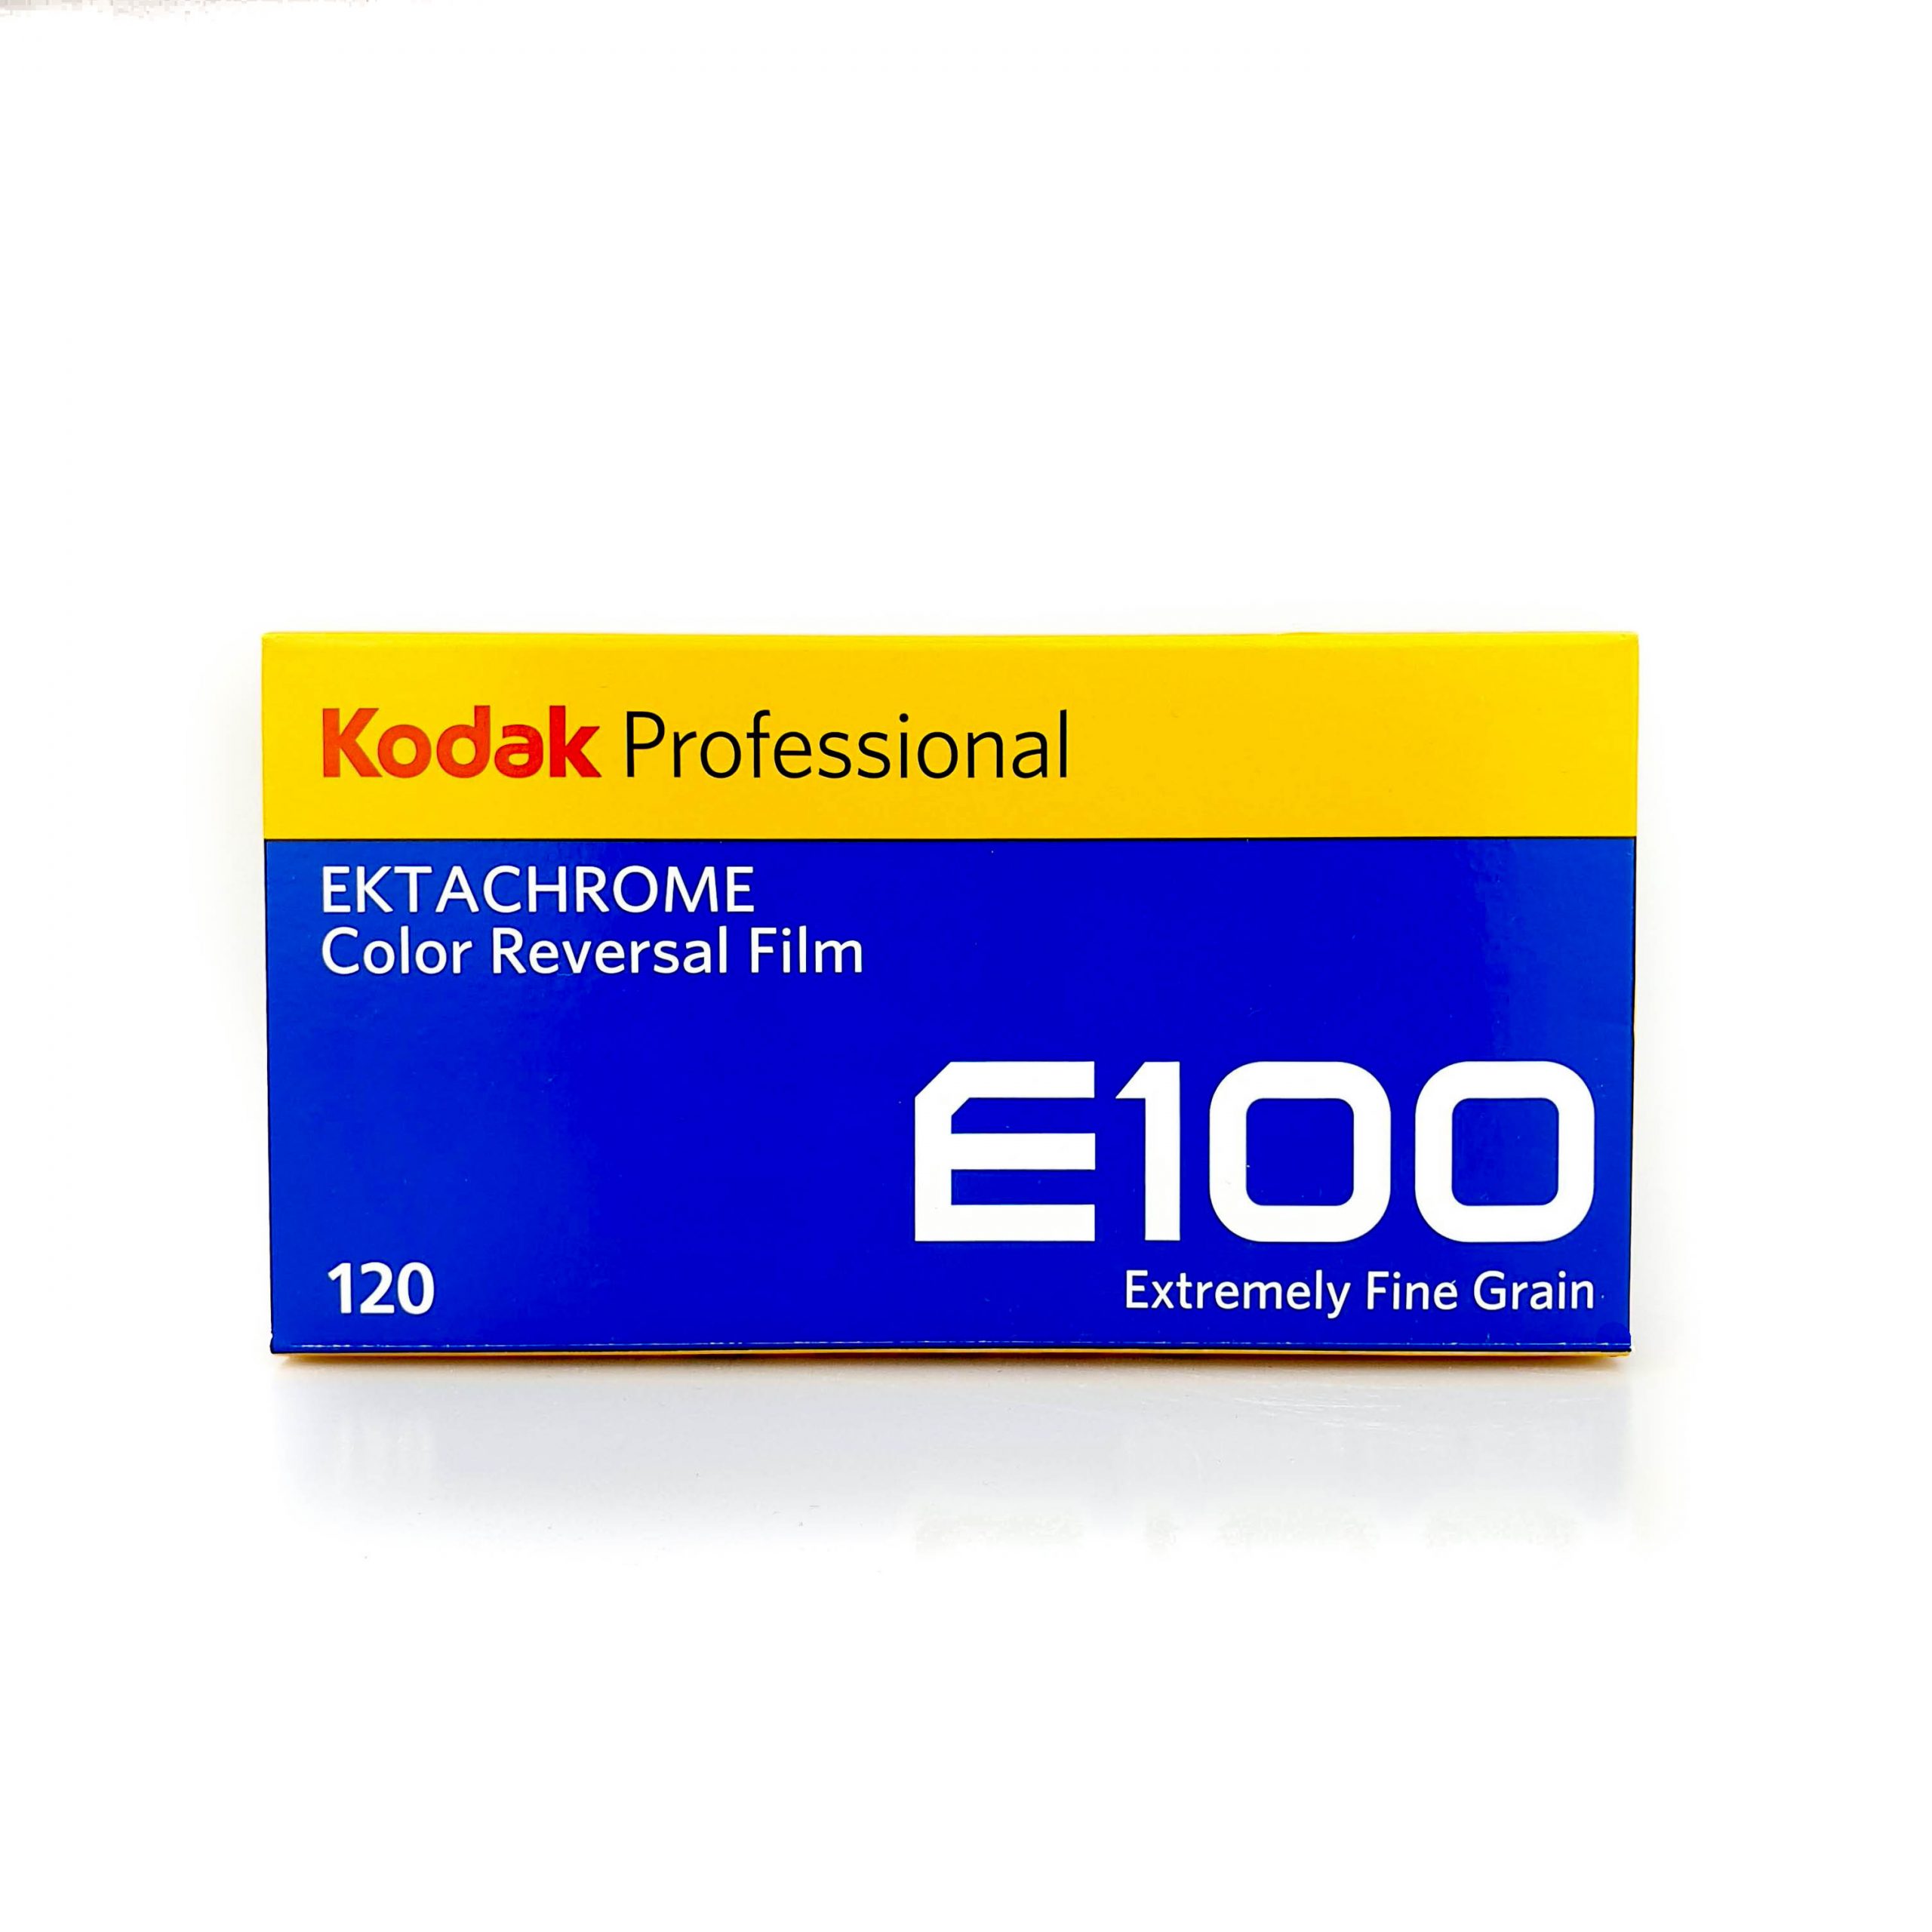 4/2022 Kodak Ektachrome E100 120 ROTOLO FILM 5 Pack 